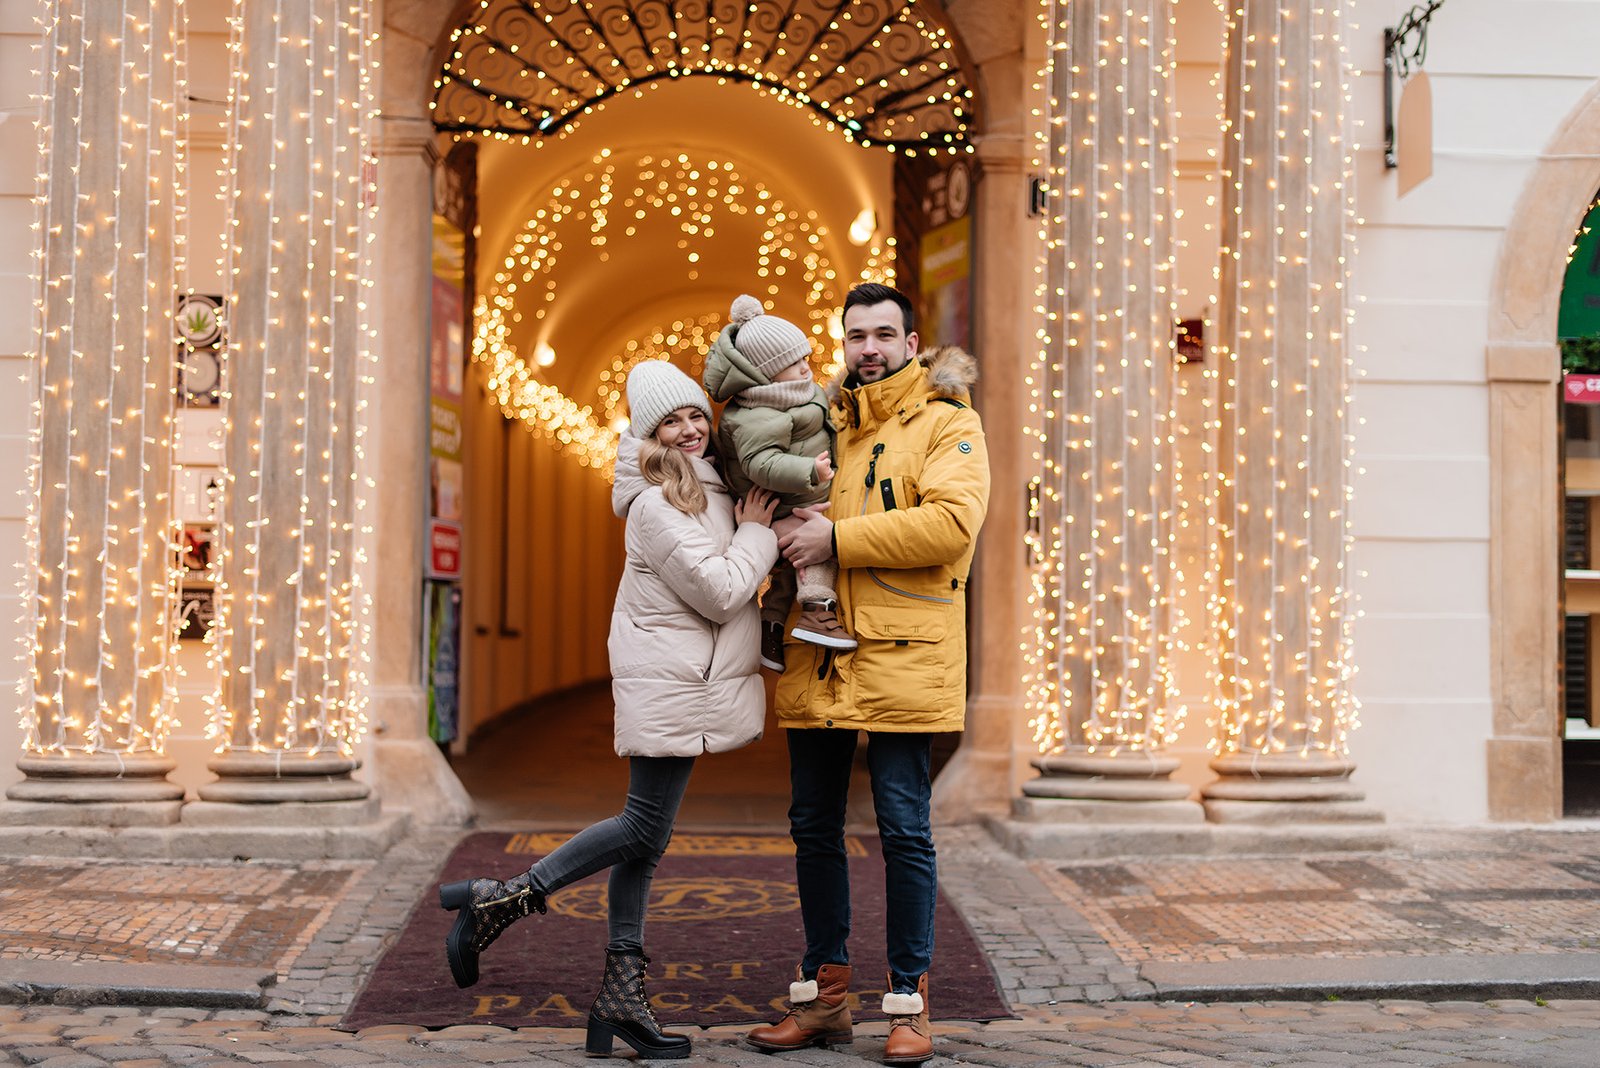 Семейная фотосессия в Праге на Рождественской ярмарке